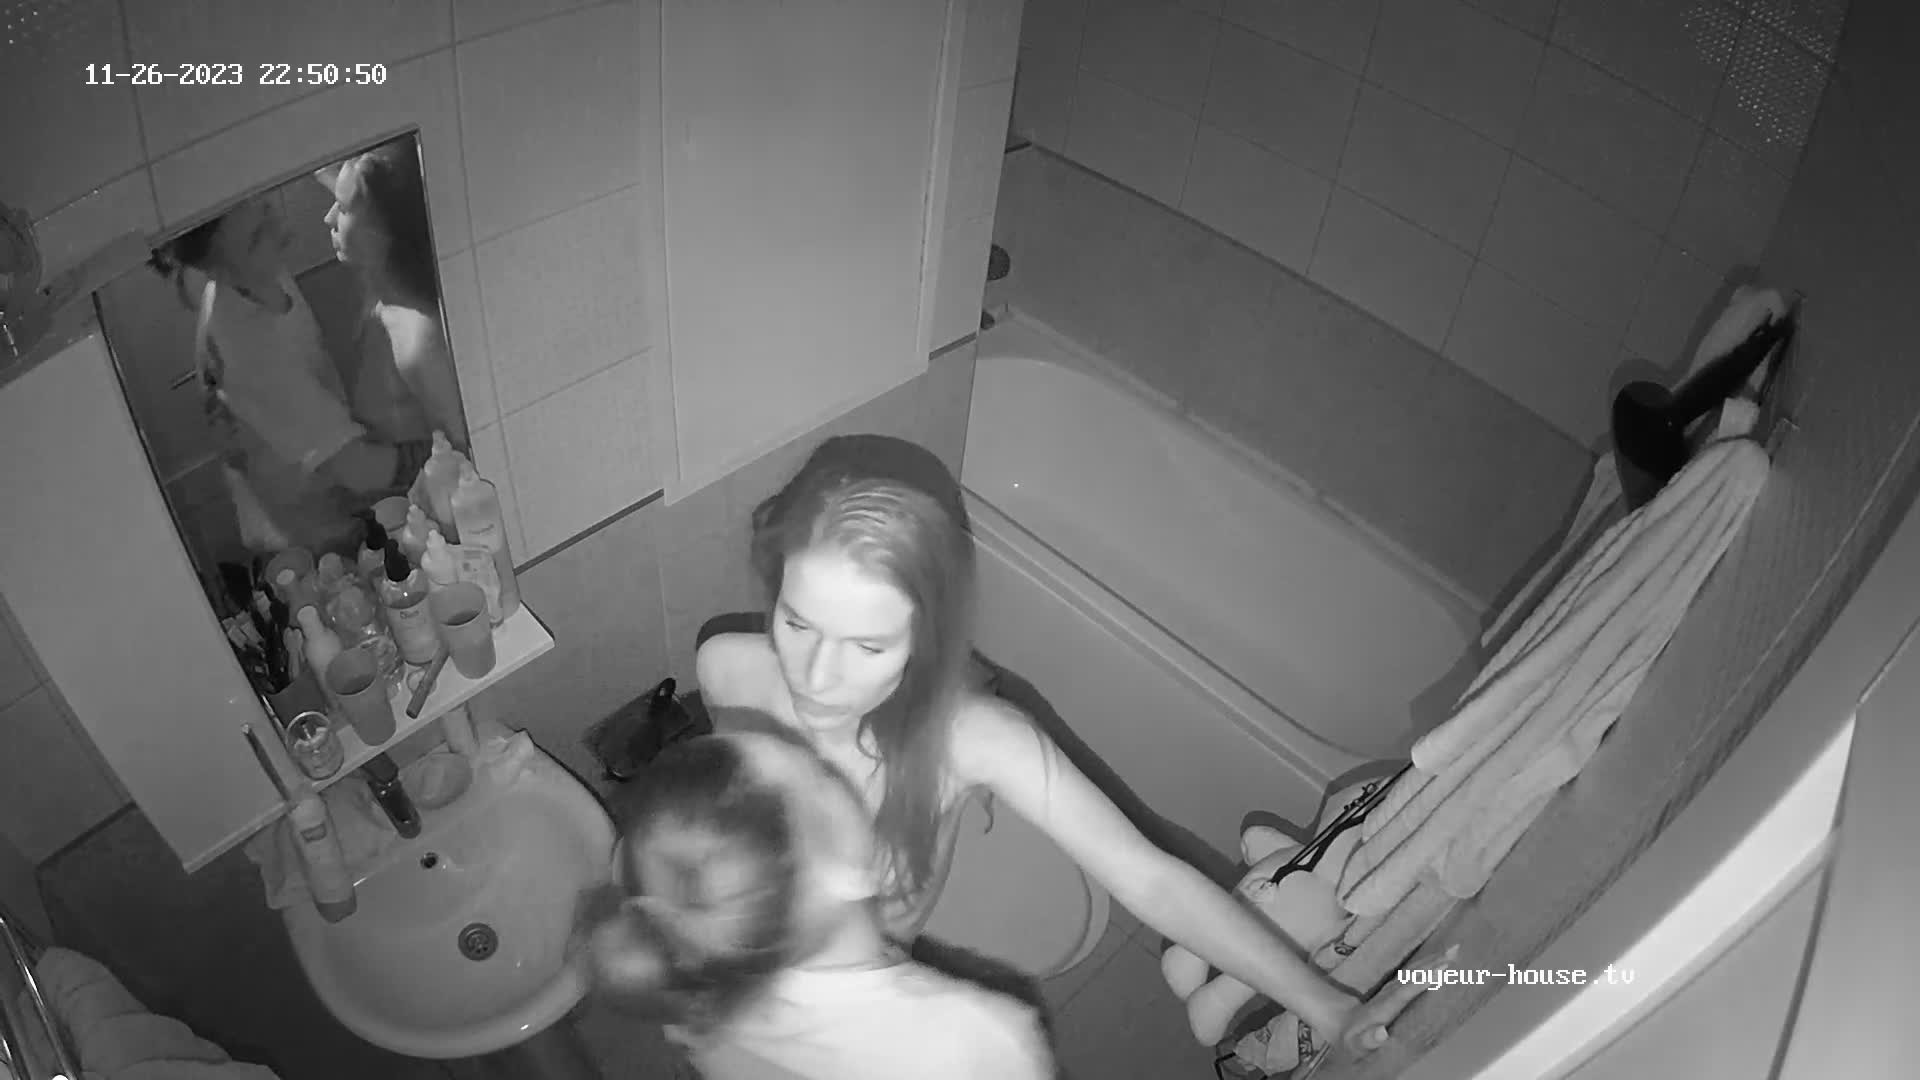 Raffaela and Esma lesbian sex in bathroom, Nov26/23